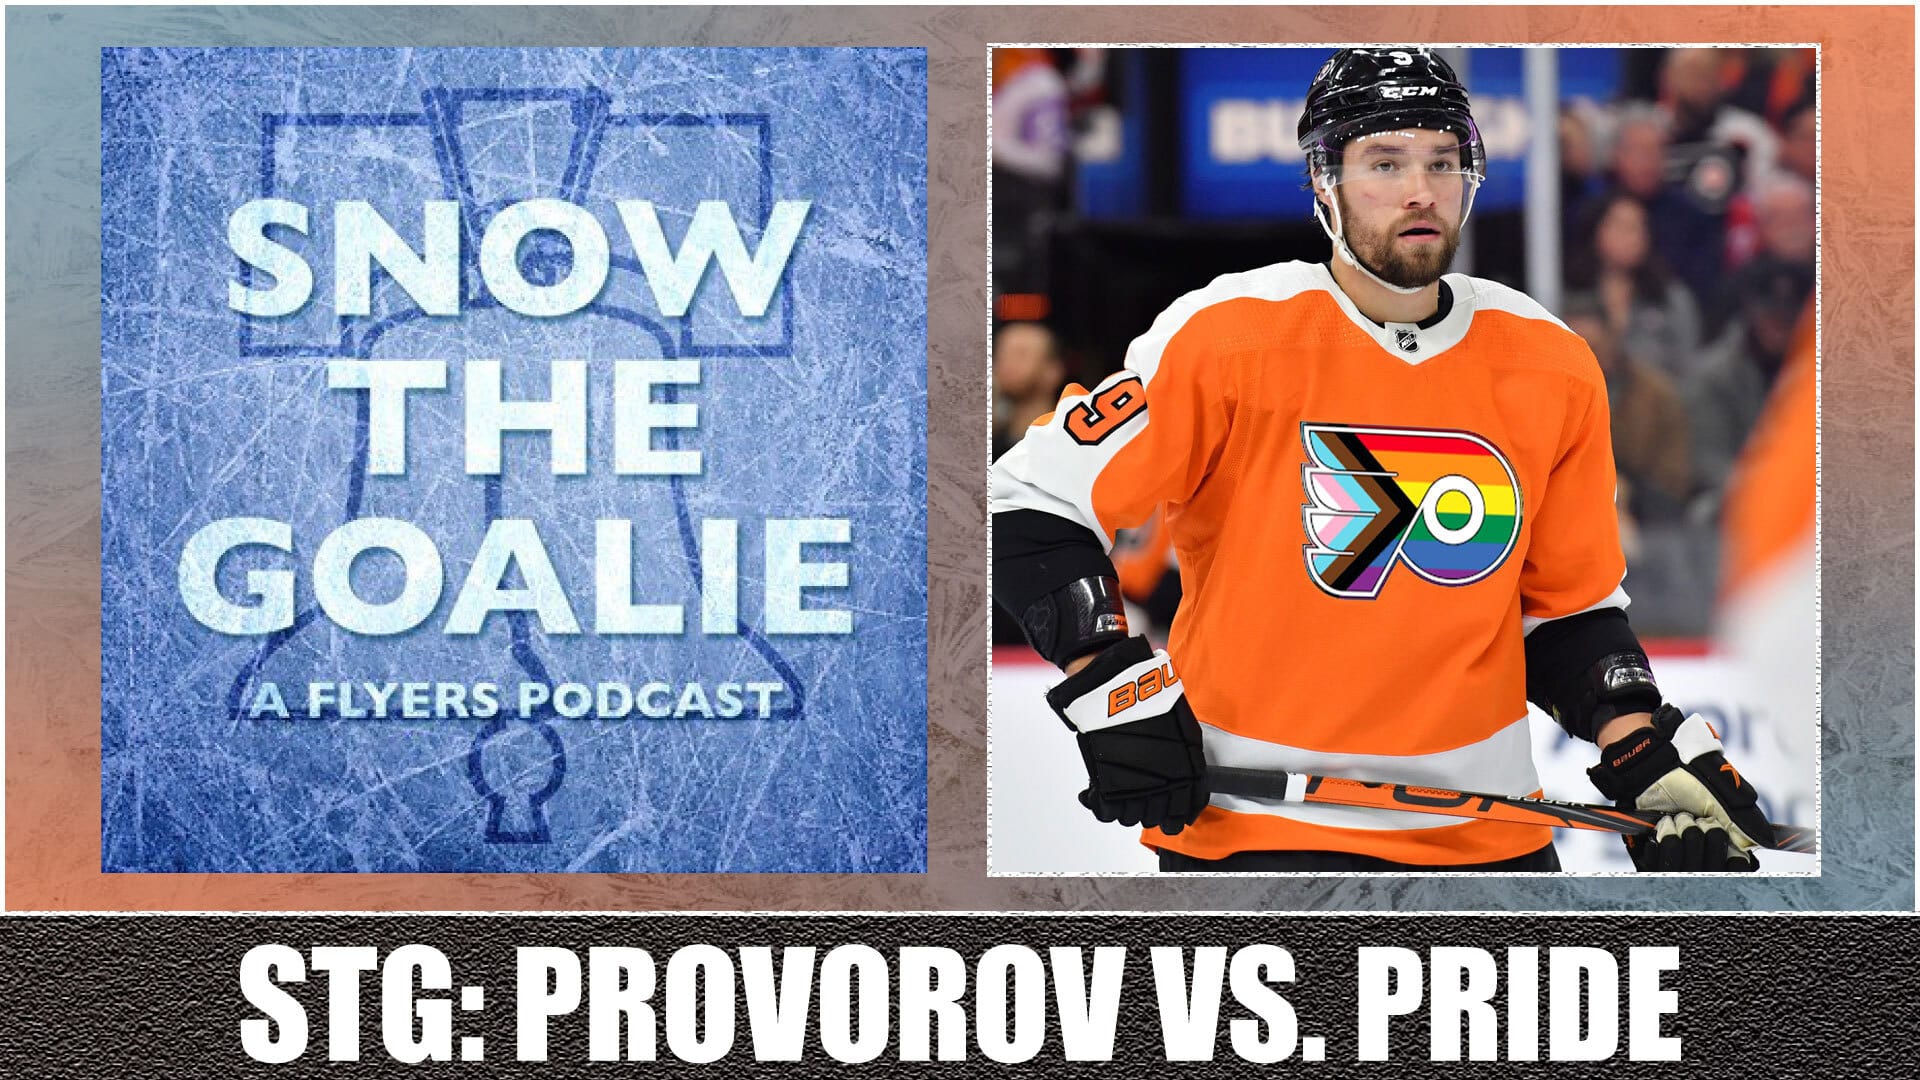 Snow The Goalie: Provorov vs. Pride